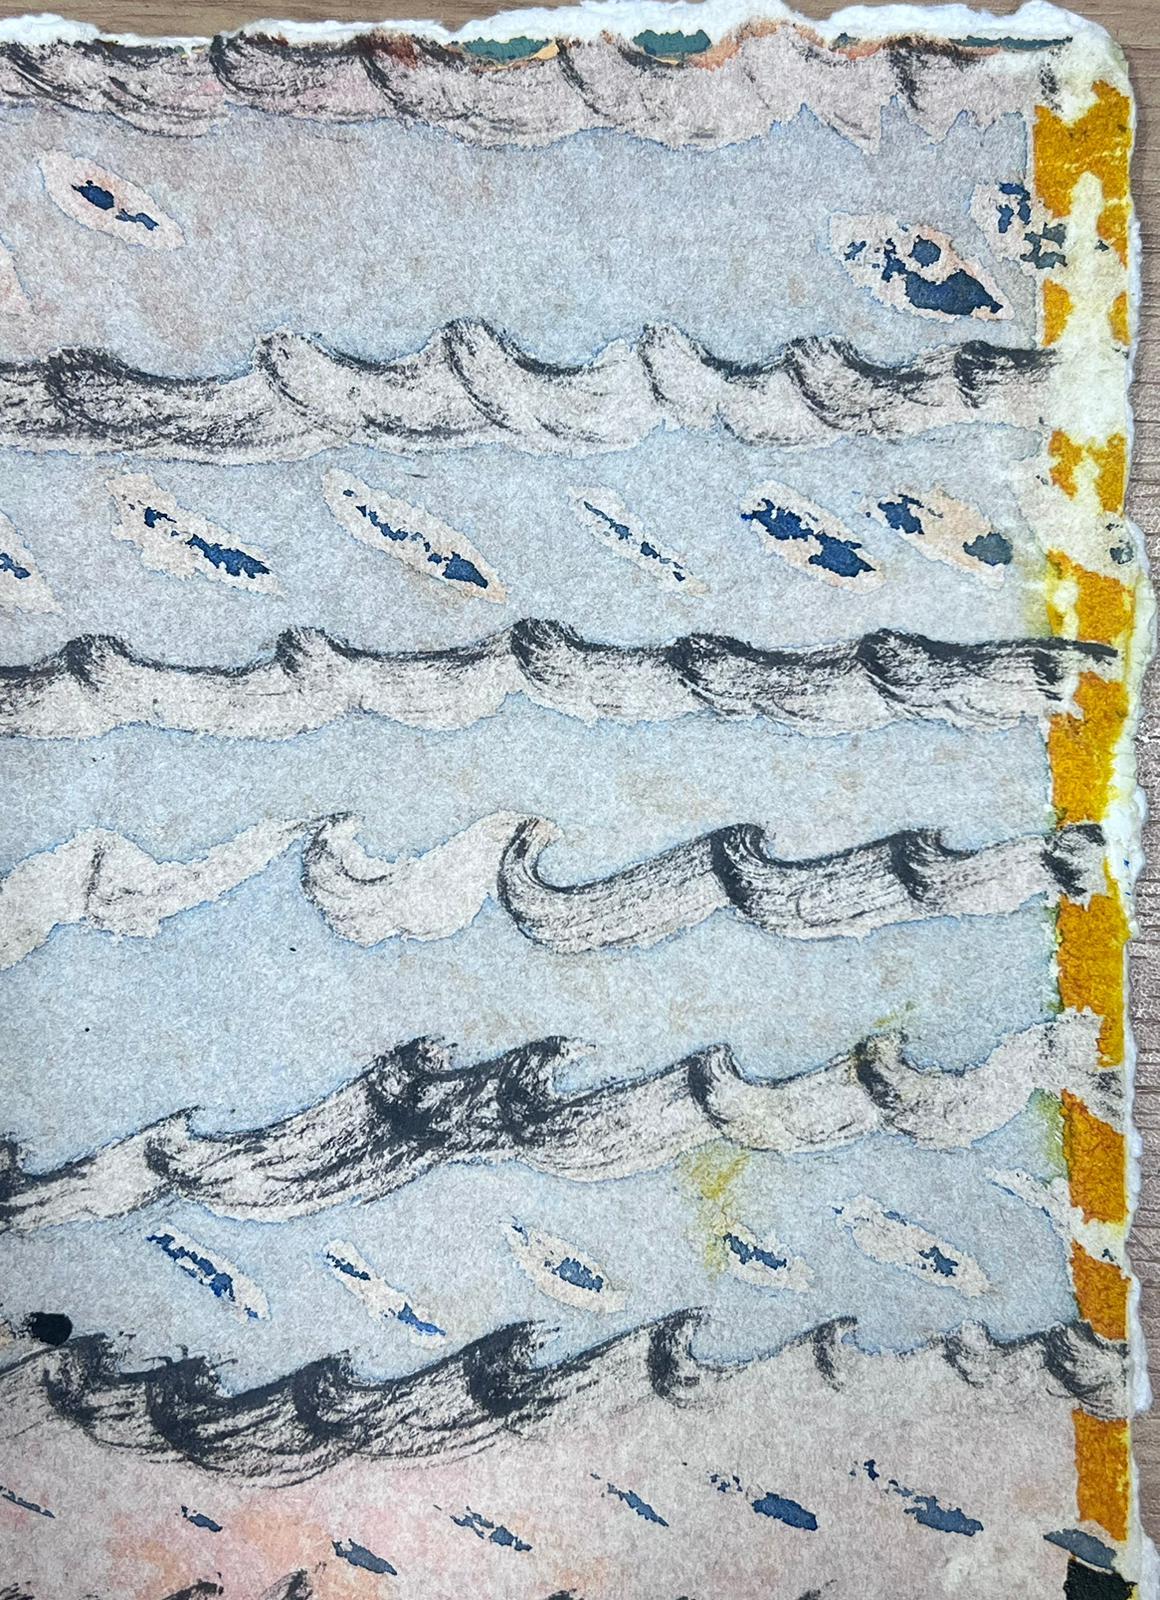 Composition expressionniste abstraite
de Jacques COULAIS (1955-2011) peinture aquarelle sur papier d'artiste
non encadré : 8.5 x 7 pouces
état : excellent
provenance : tous les tableaux de cet artiste que nous avons en vente proviennent du Studio de